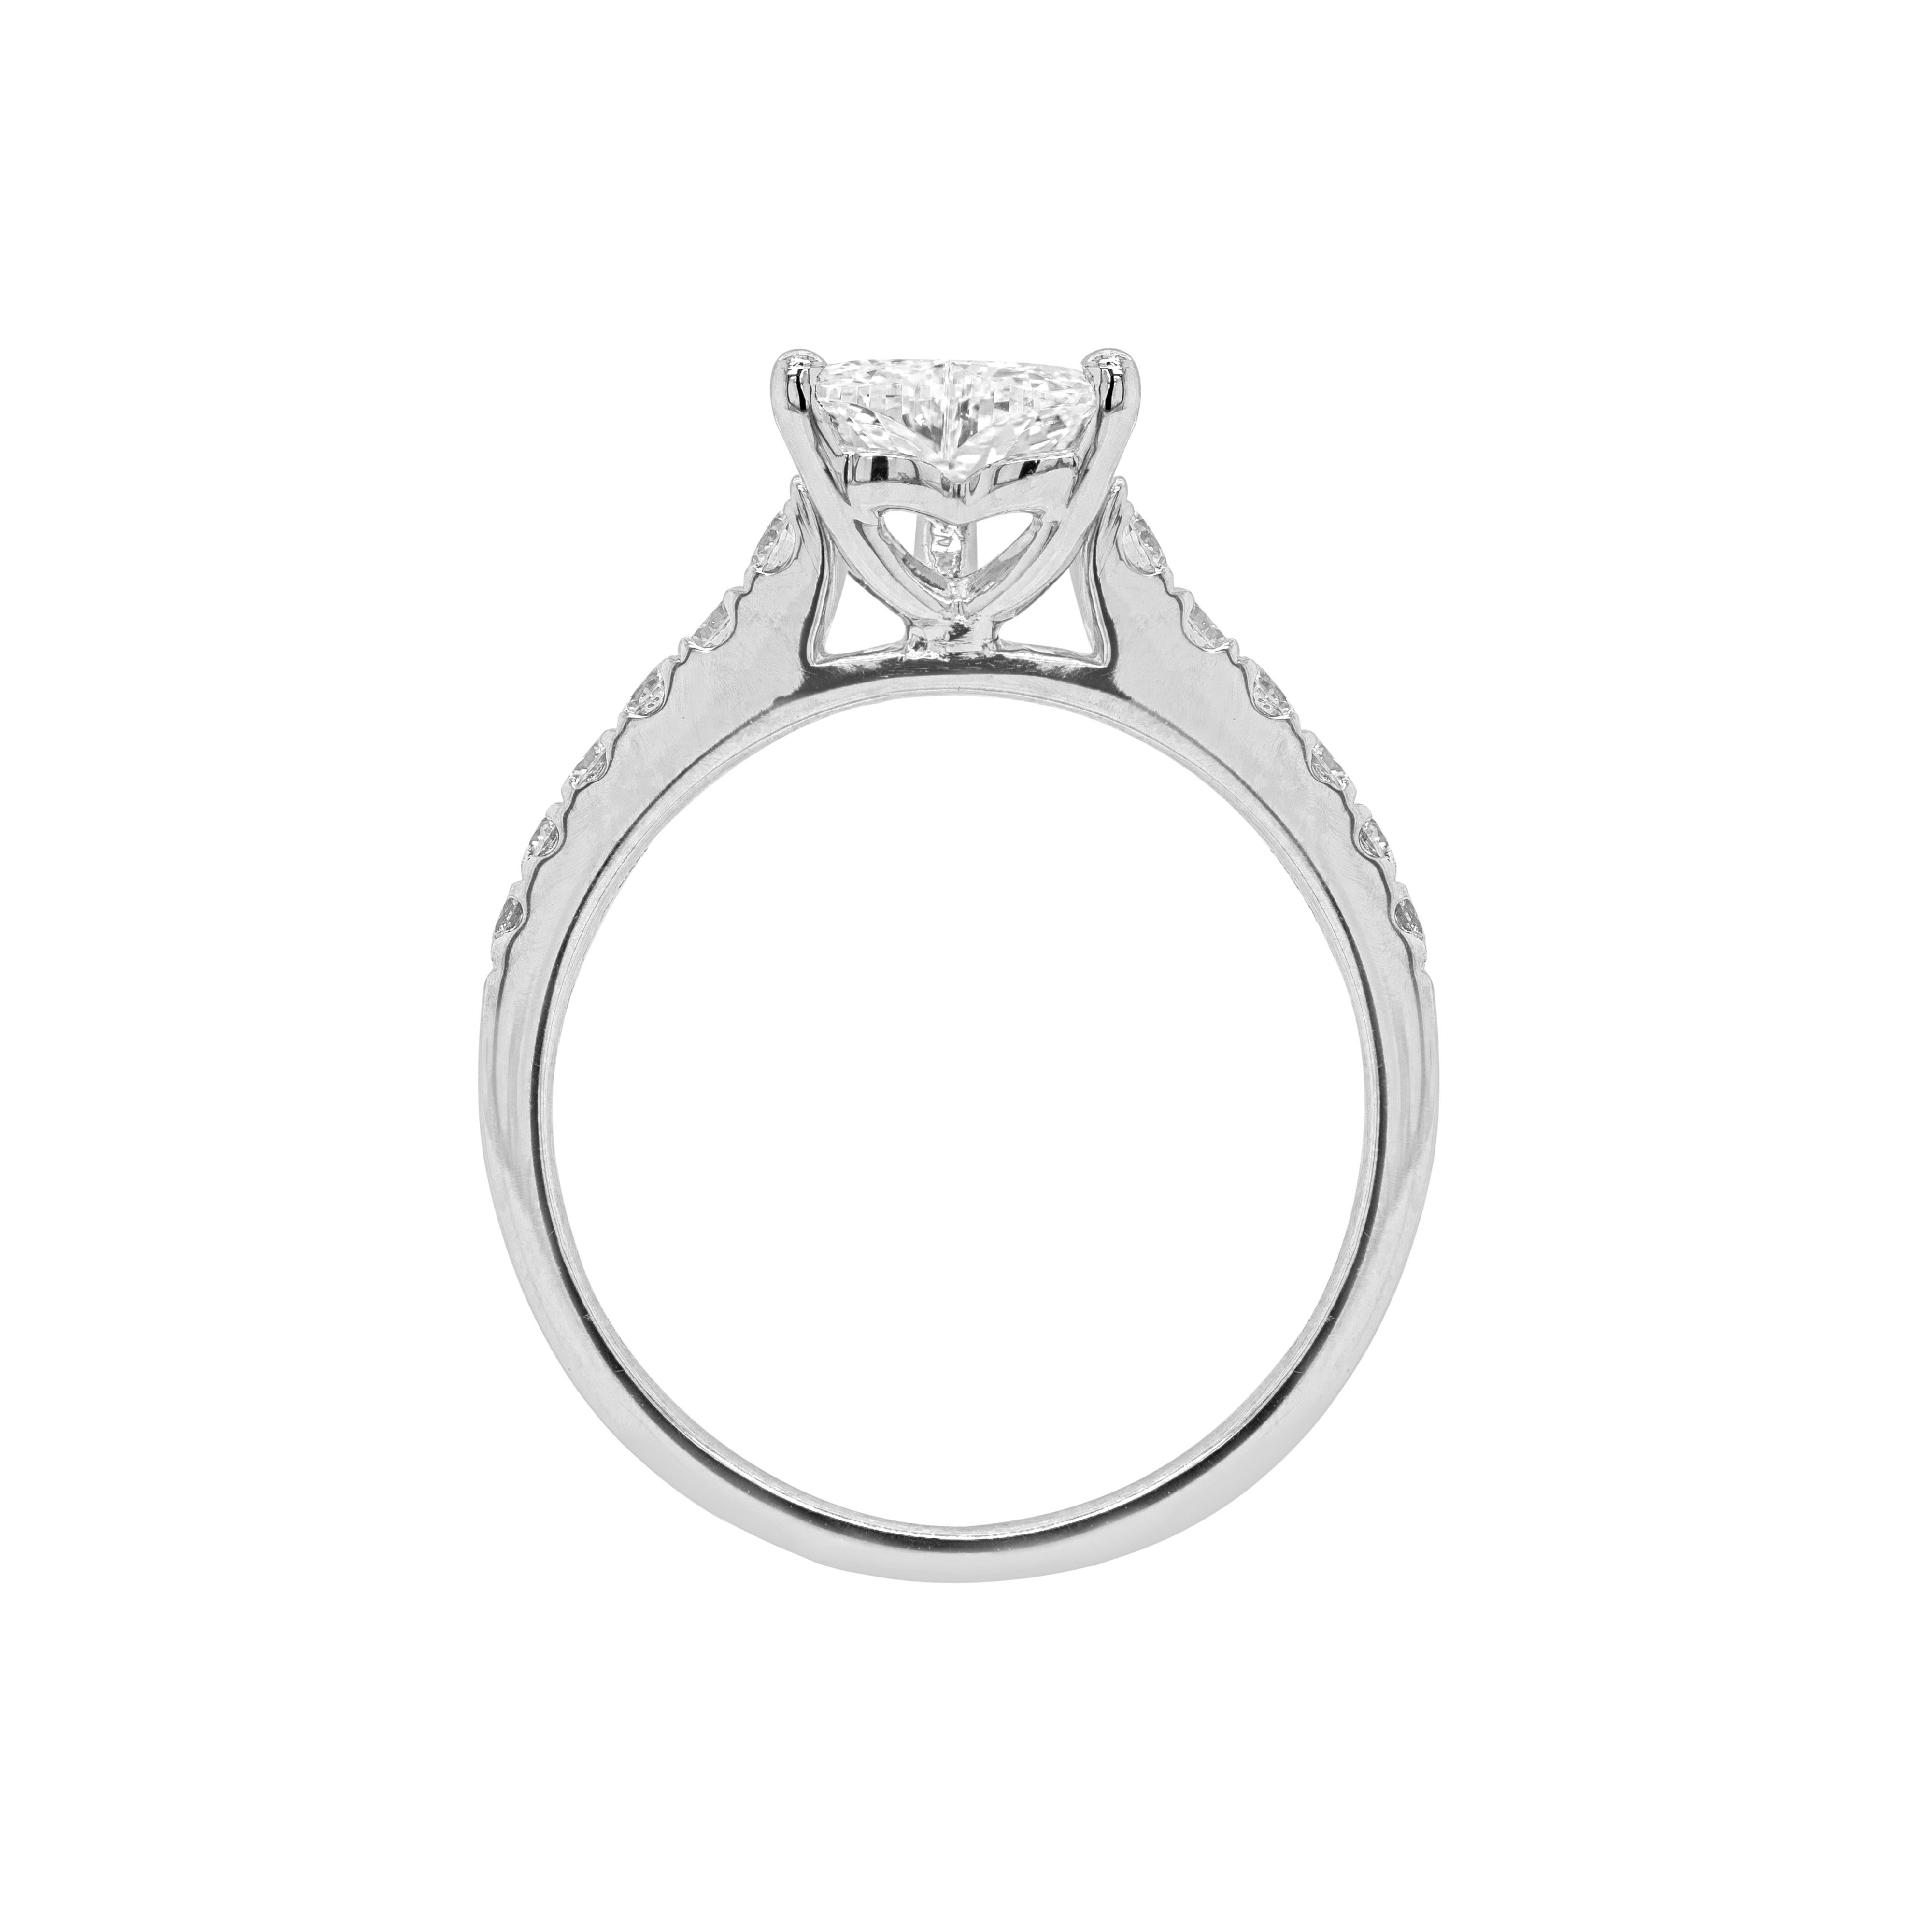 Cette bague de fiançailles exquise présente un merveilleux diamant en forme de cœur de 1,00ct, de couleur I et de pureté VVS1, monté dans une monture ouverte à trois griffes. La belle pierre est accompagnée de six beaux diamants ronds de taille